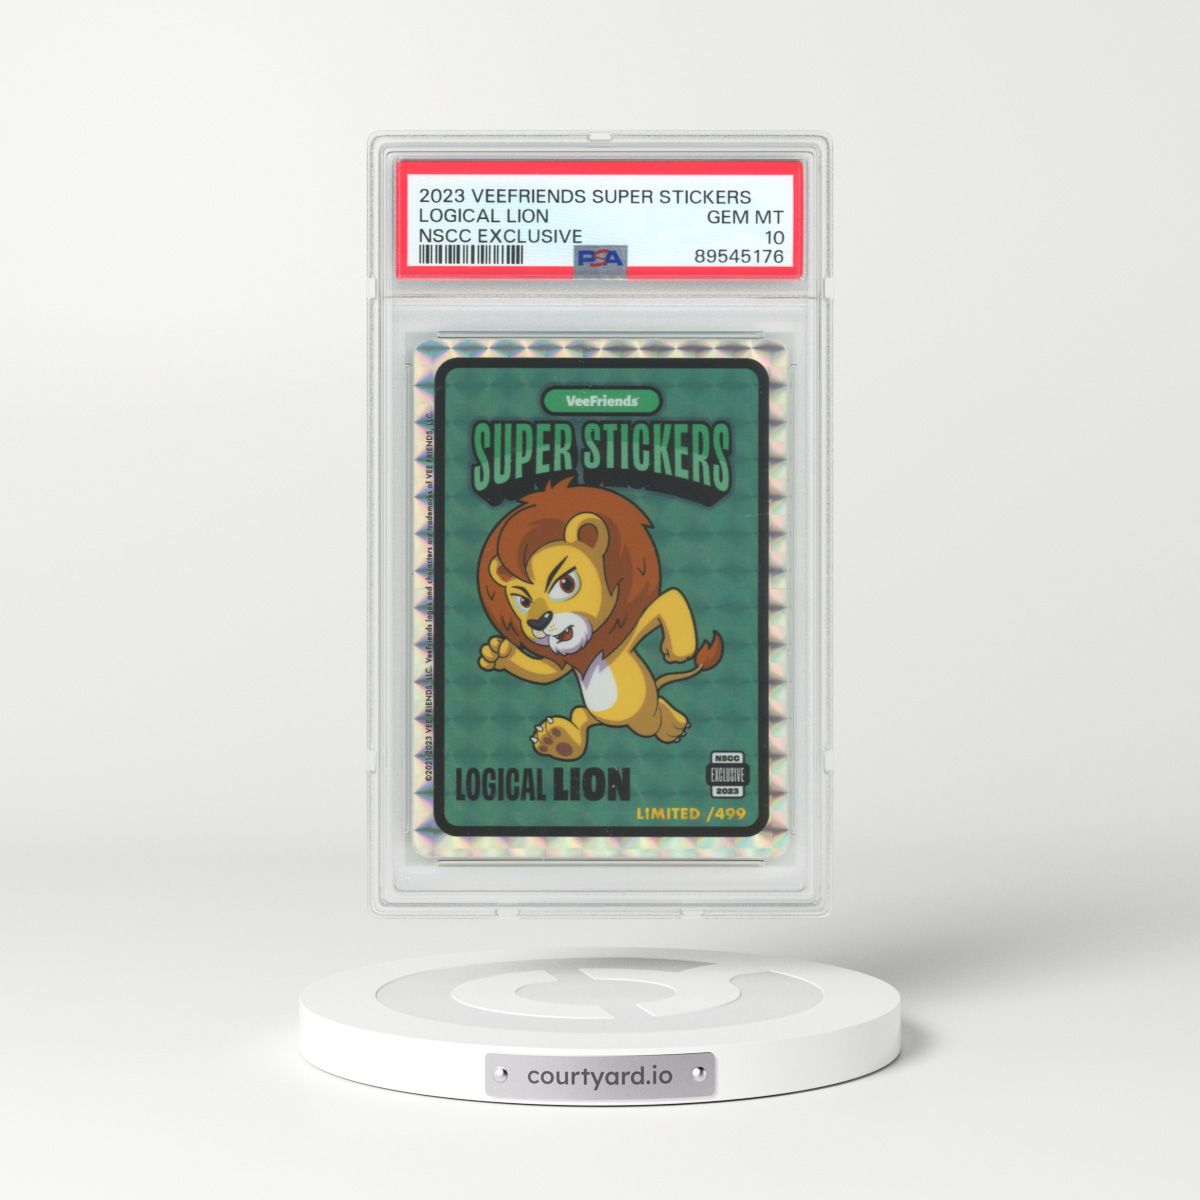 2023 Veefriends Super Stickers Logical Lion - NSCC Exclusive (PSA 10 GEM MINT)